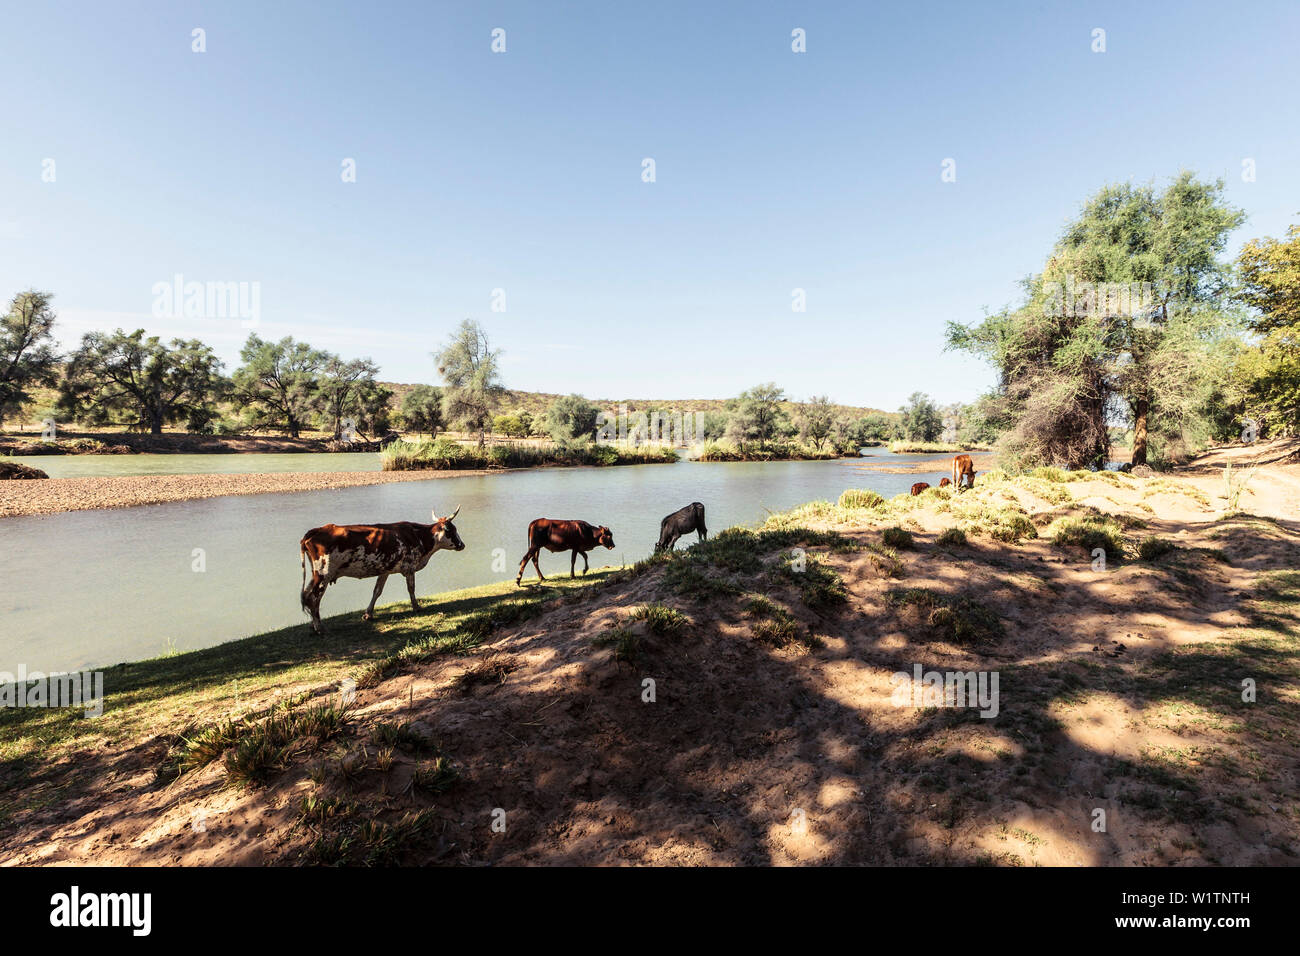 De bovins appartenant aux personnes Himba, la rivière Kunene, à la frontière de l'Angola. La Namibie, l'Afrique Banque D'Images